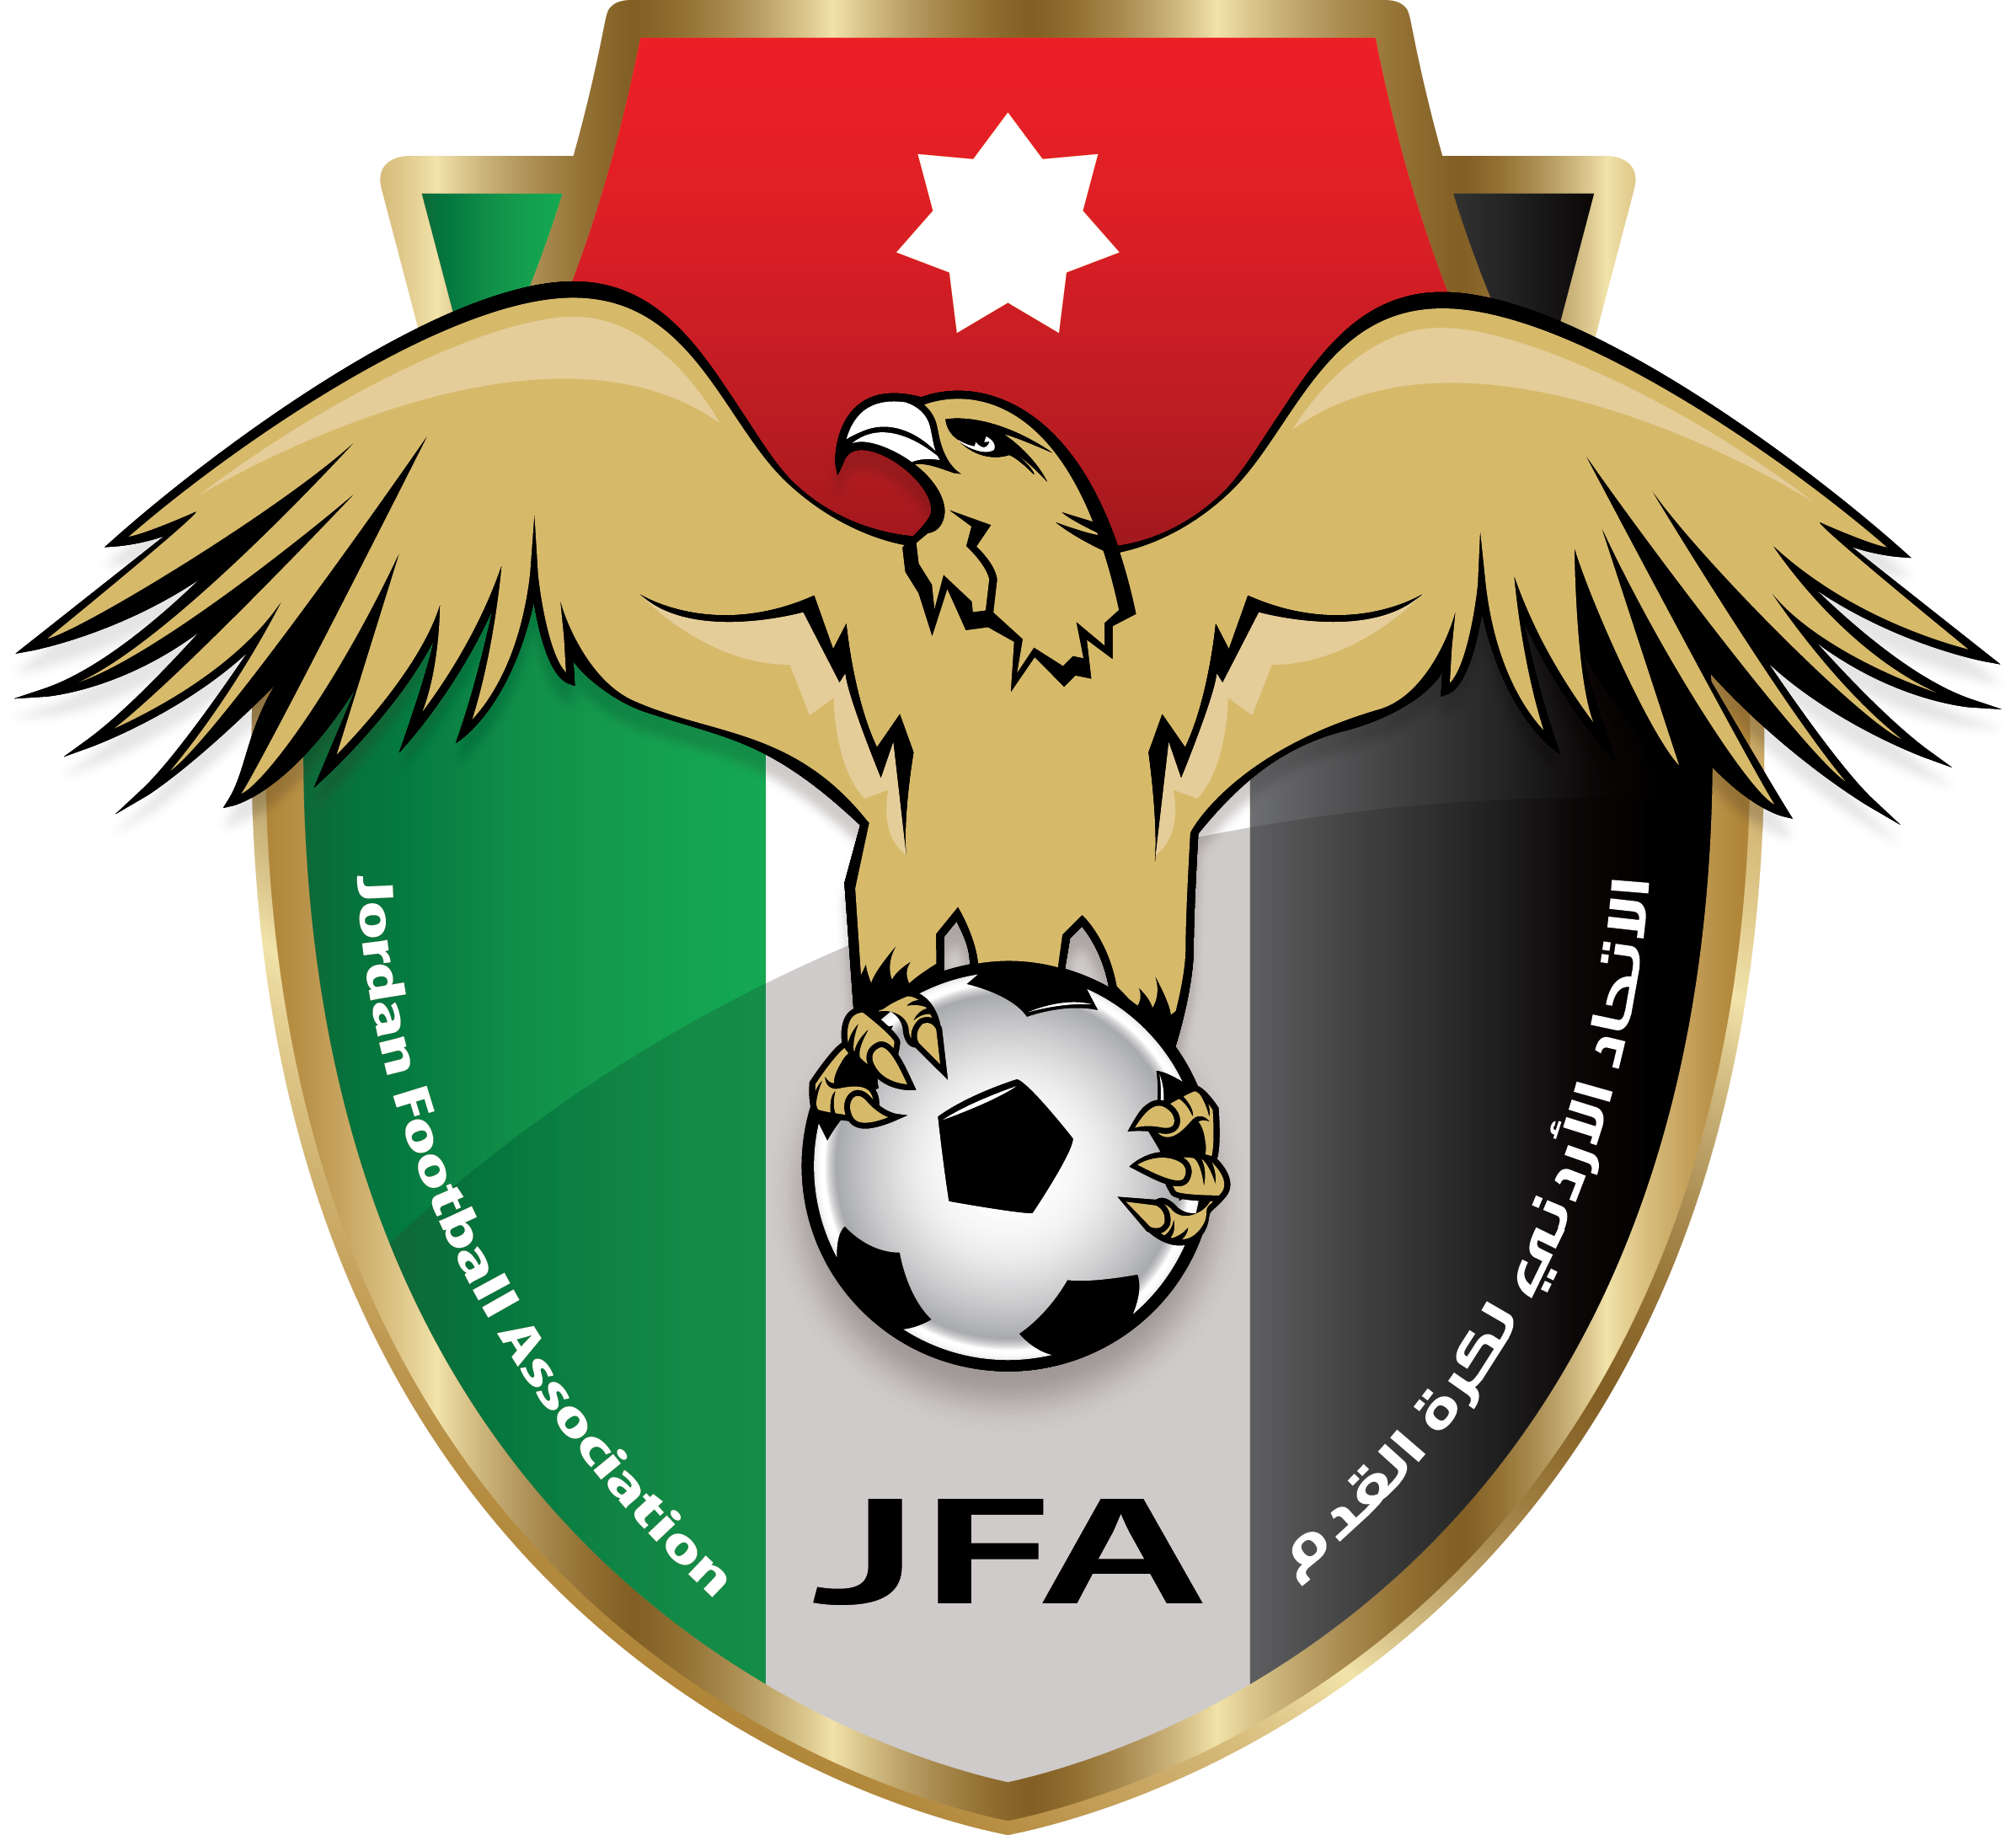 約旦國家男子足球隊